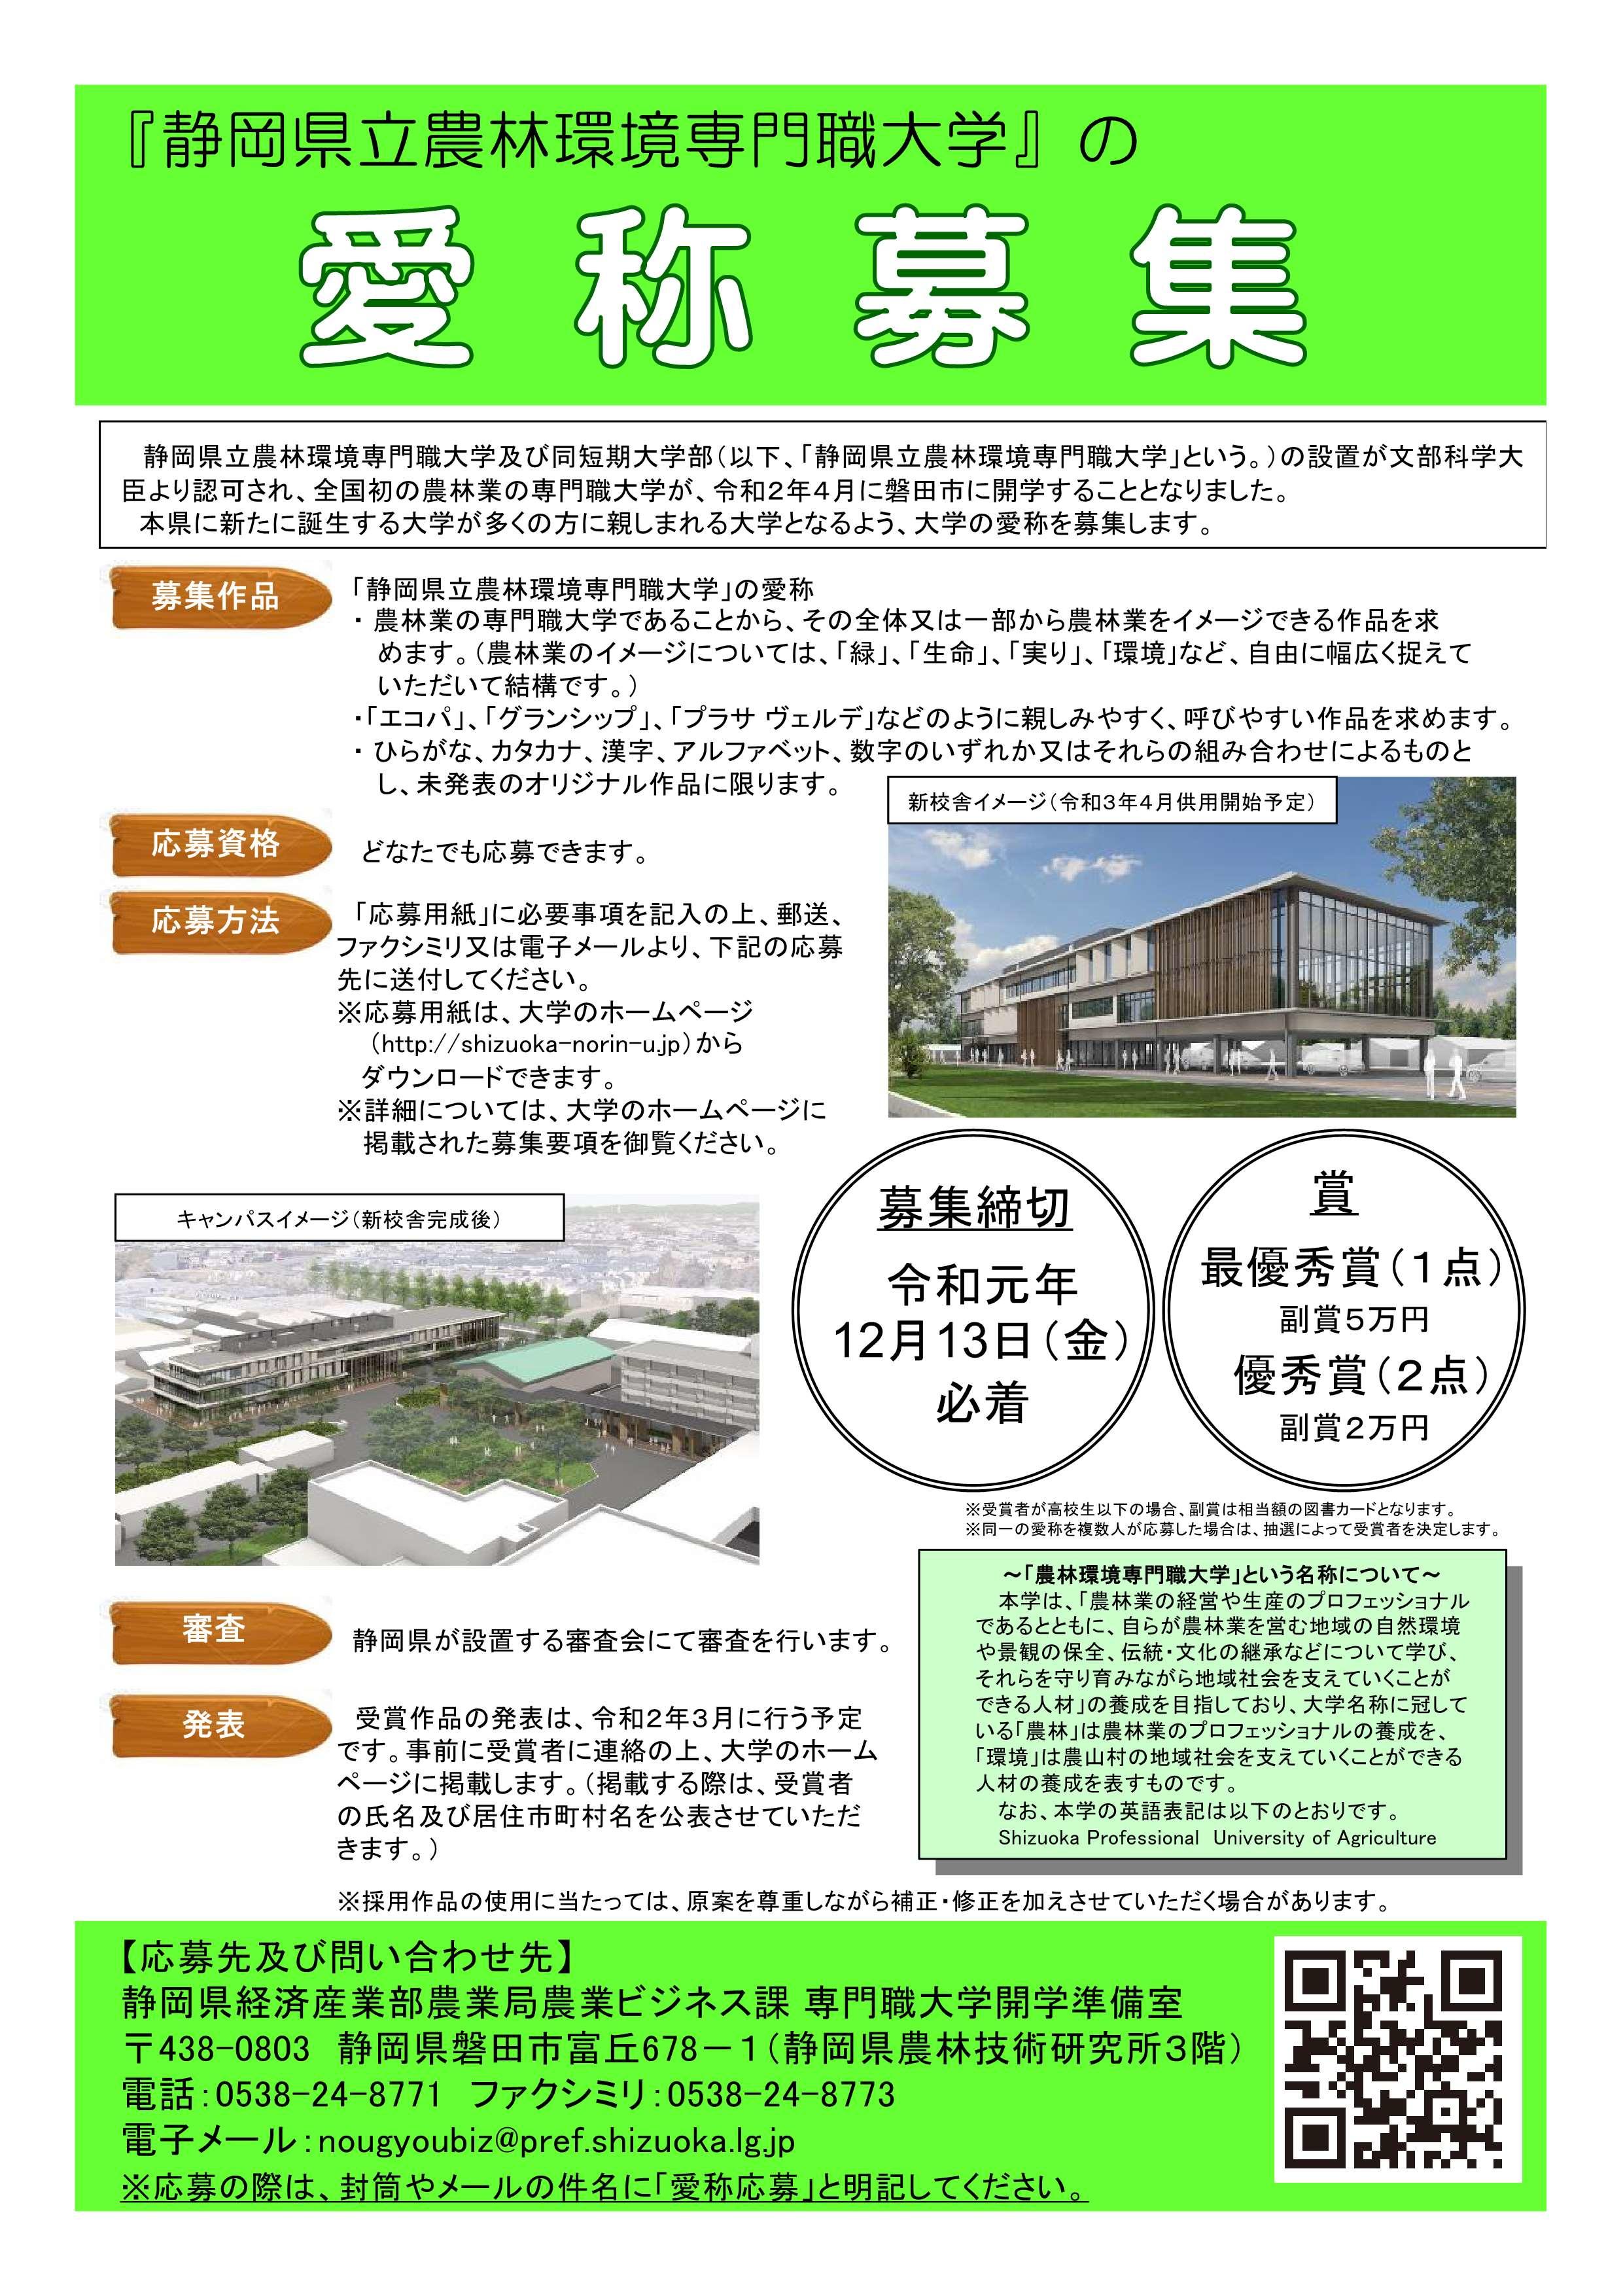 プレスリリース 静岡県立農林環境専門職大学 の愛称および校章デザインを募集します Digital Pr Platform 毎日新聞